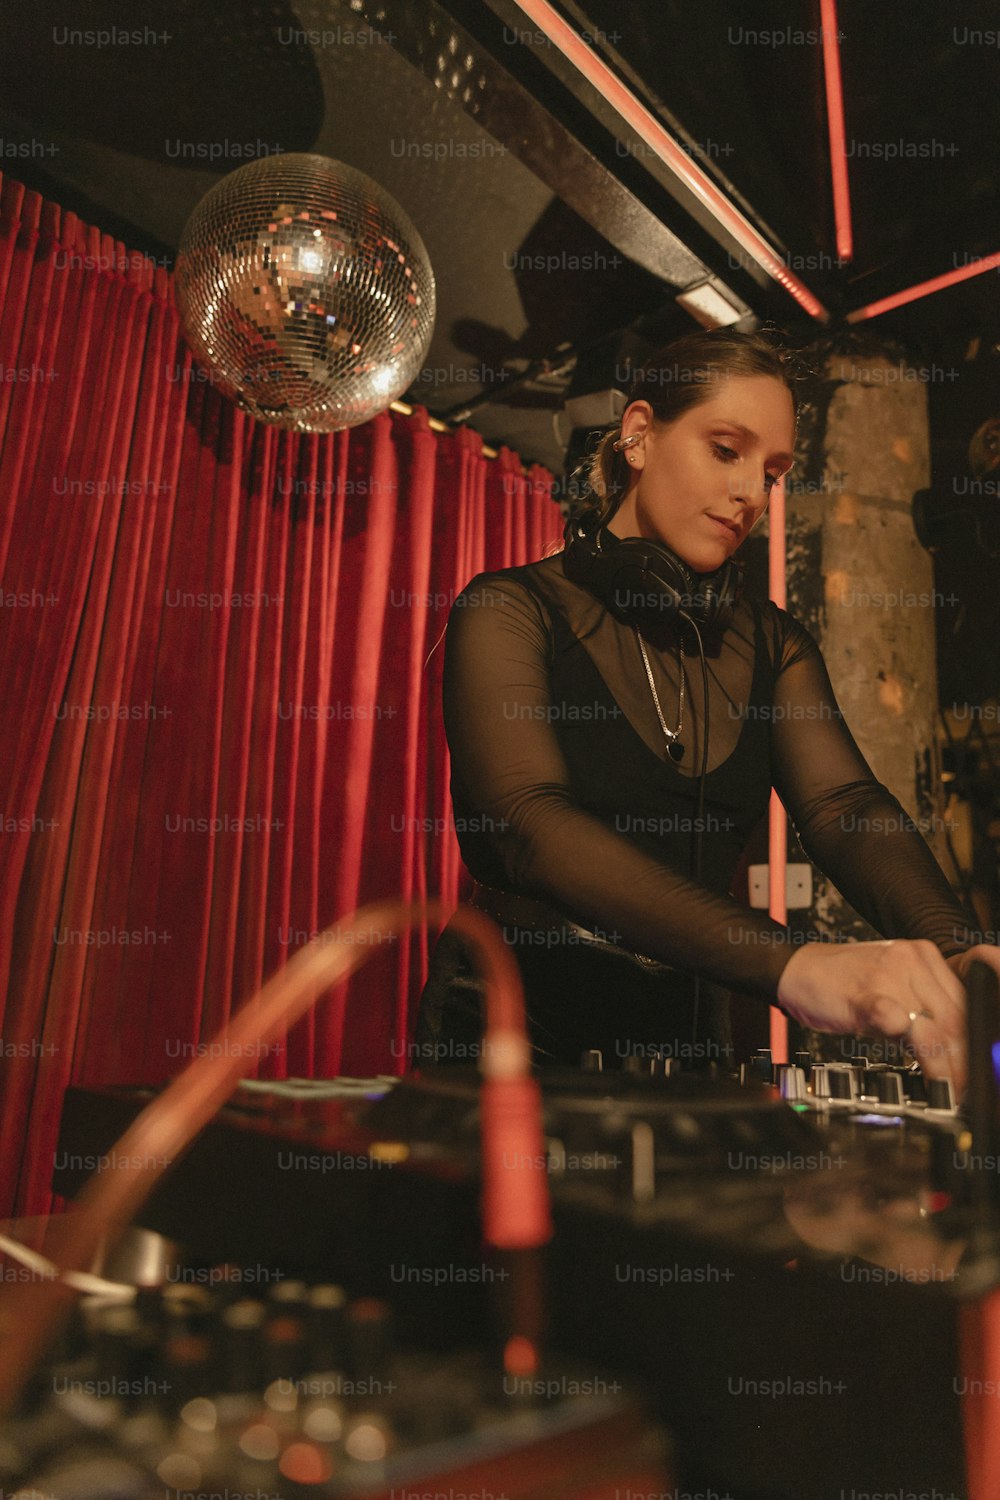 검은 드레스를 입은 여자가 DJ 세트를 연주하고 있다